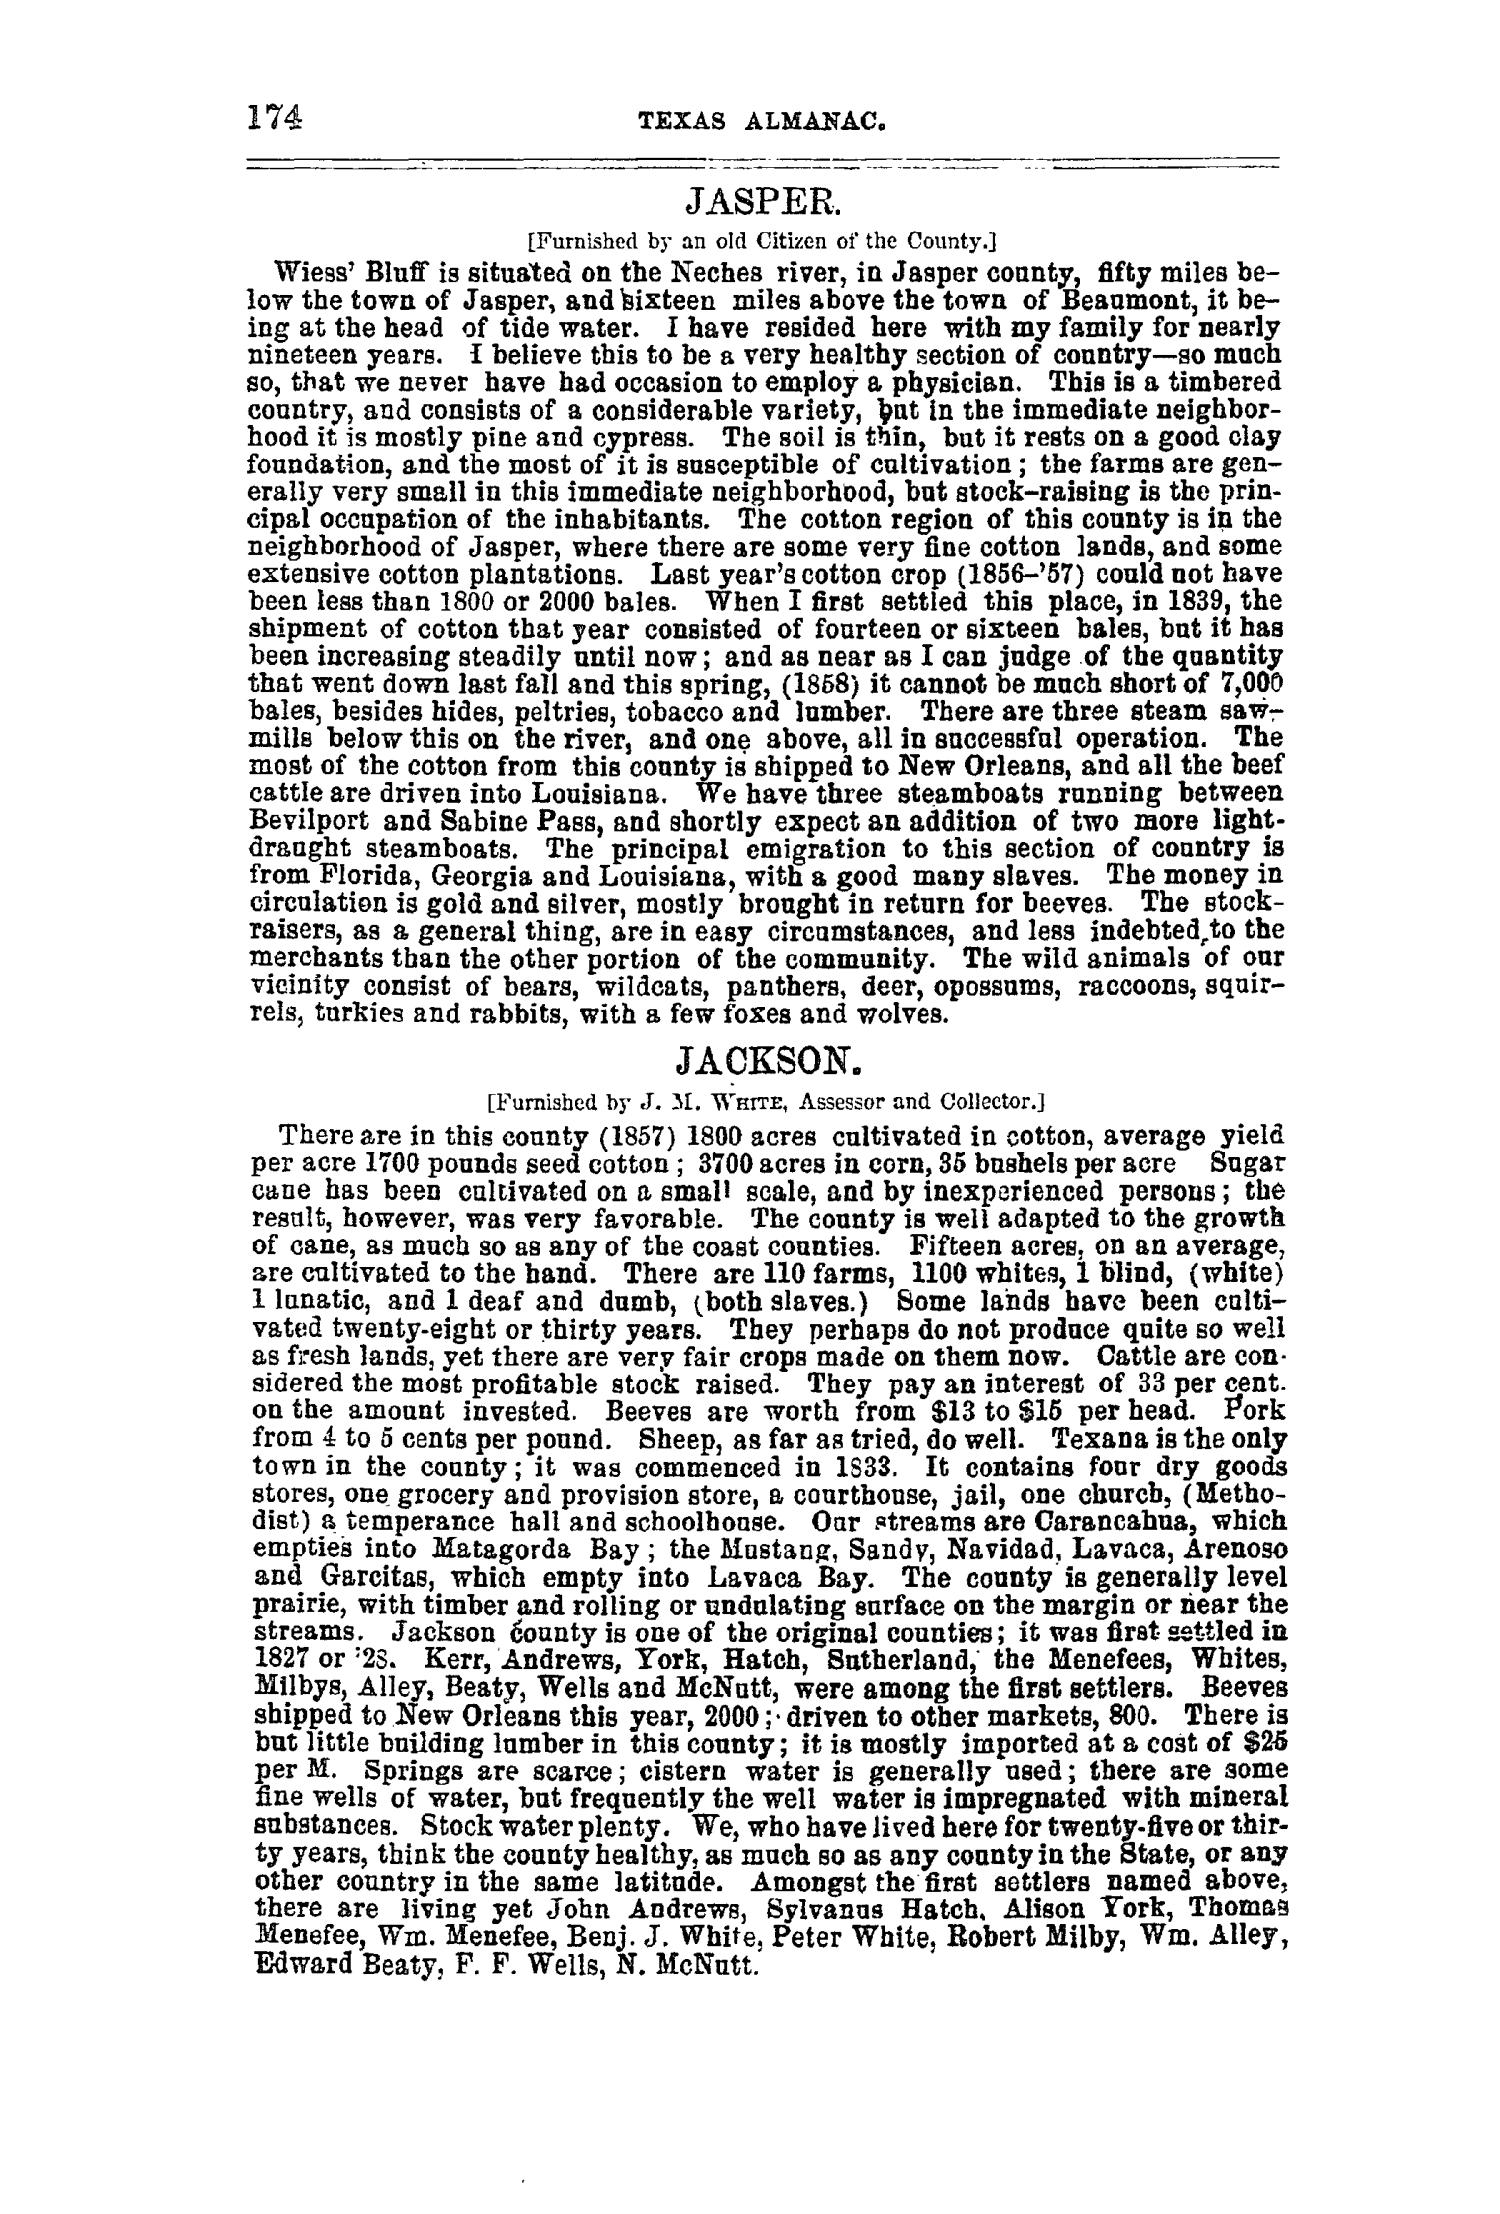 Texas Almanac, 1859
                                                
                                                    174
                                                